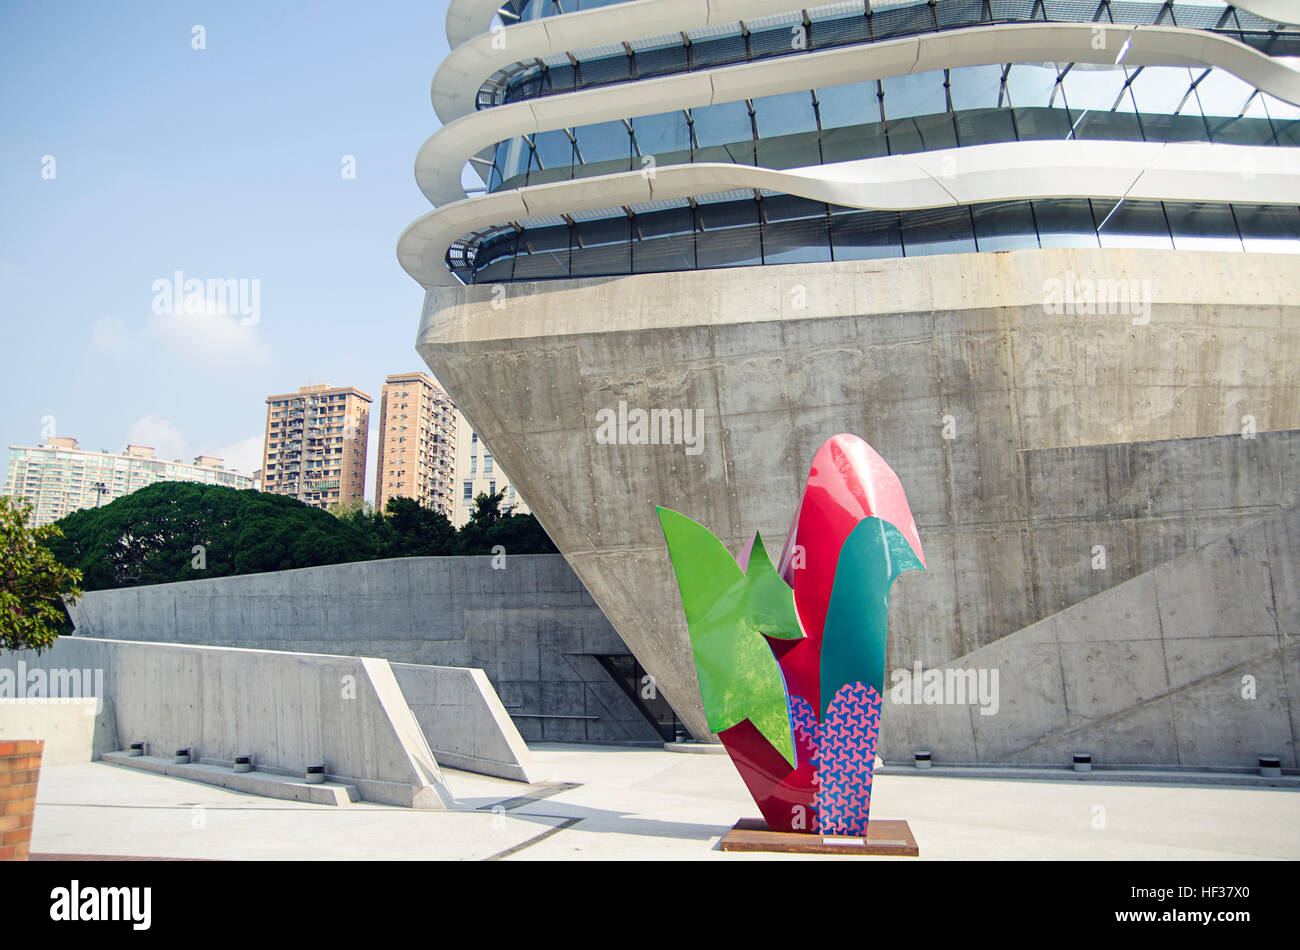 Hong Kong, China - November 24, 2014: Modern University Building by Zaha Hadid Architects Stock Photo